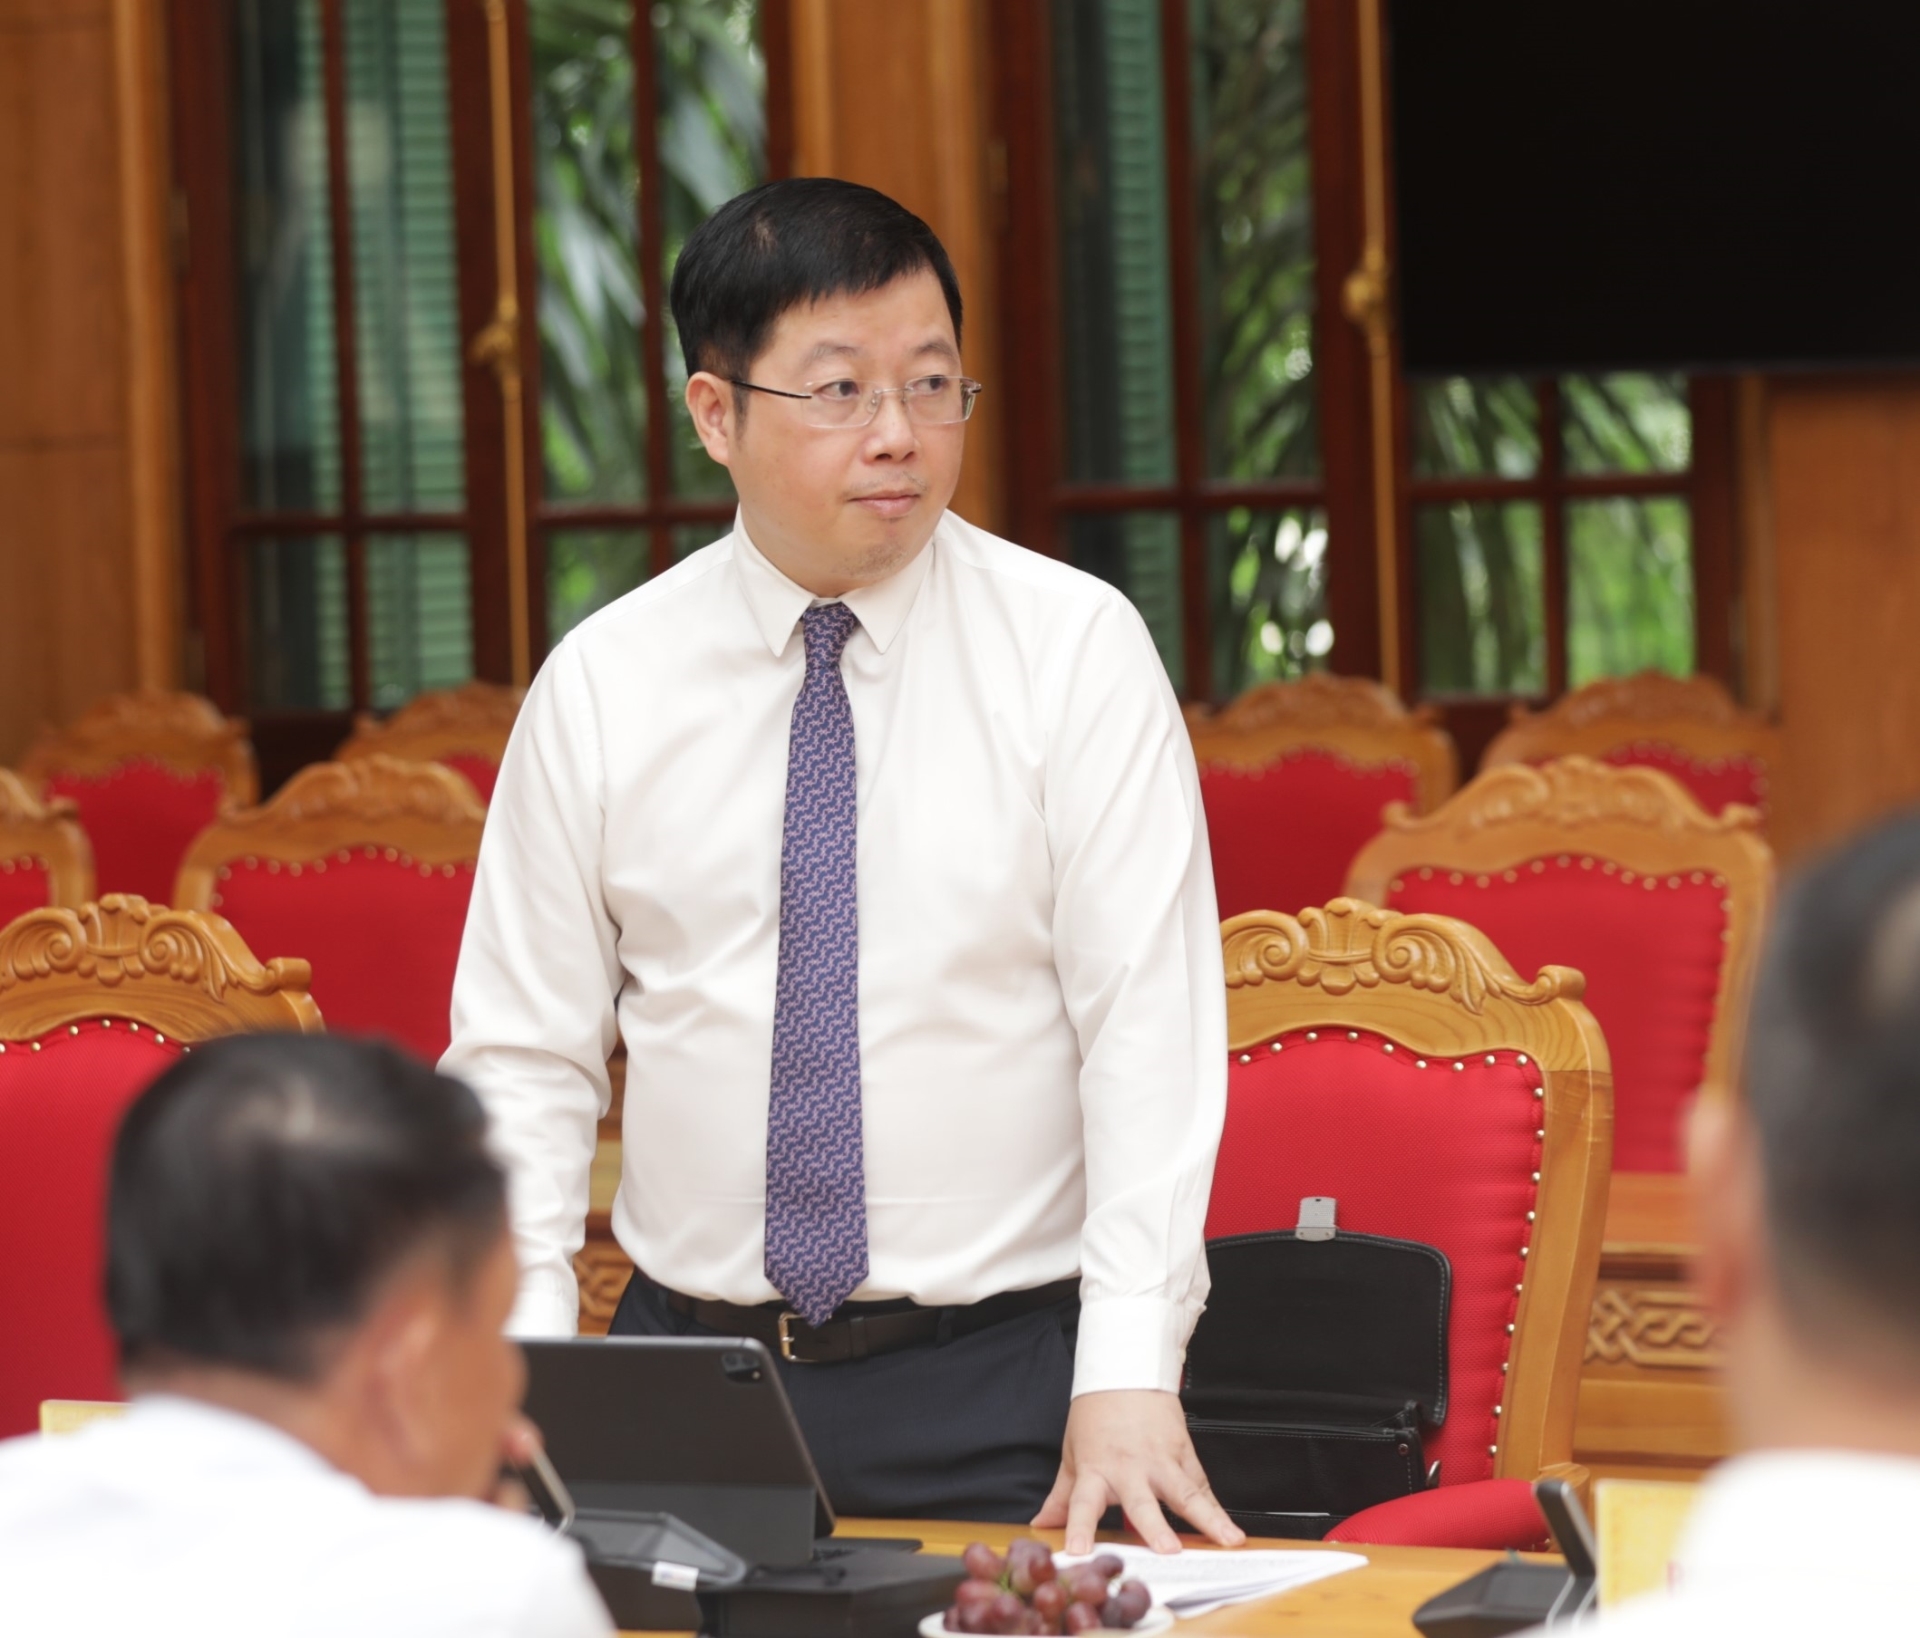 Đồng chí Nguyễn Thanh Lâm, Thứ trưởng Bộ Thông tin và Truyền thông phát biểu tại buổi làm việc.